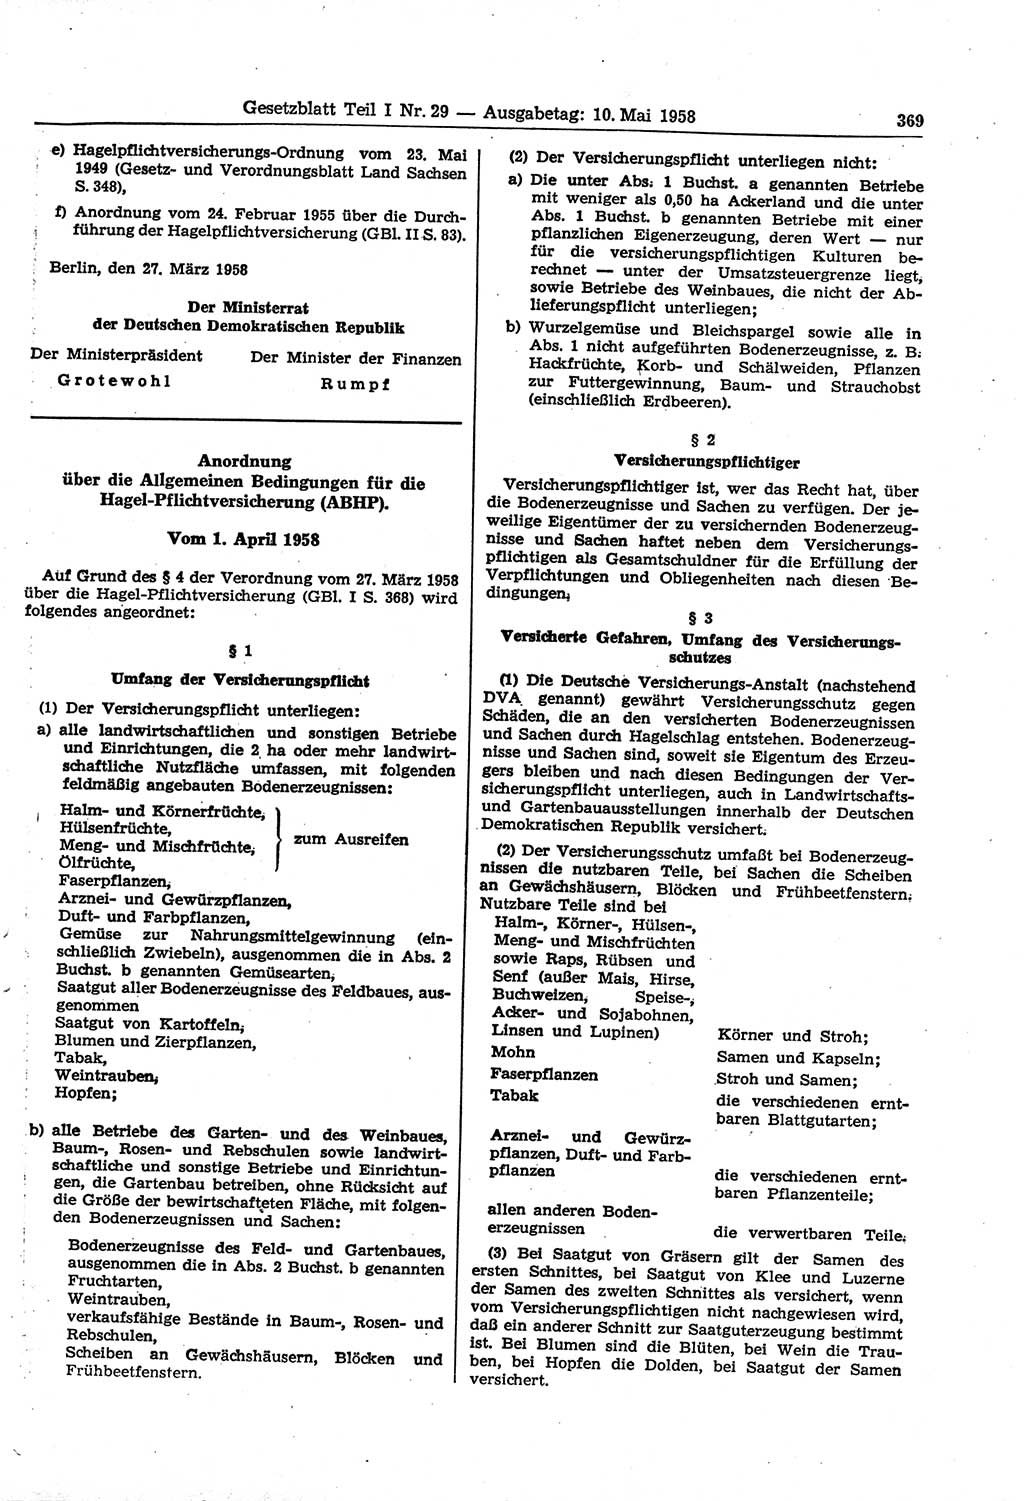 Gesetzblatt (GBl.) der Deutschen Demokratischen Republik (DDR) Teil â… 1958, Seite 369 (GBl. DDR â… 1958, S. 369)